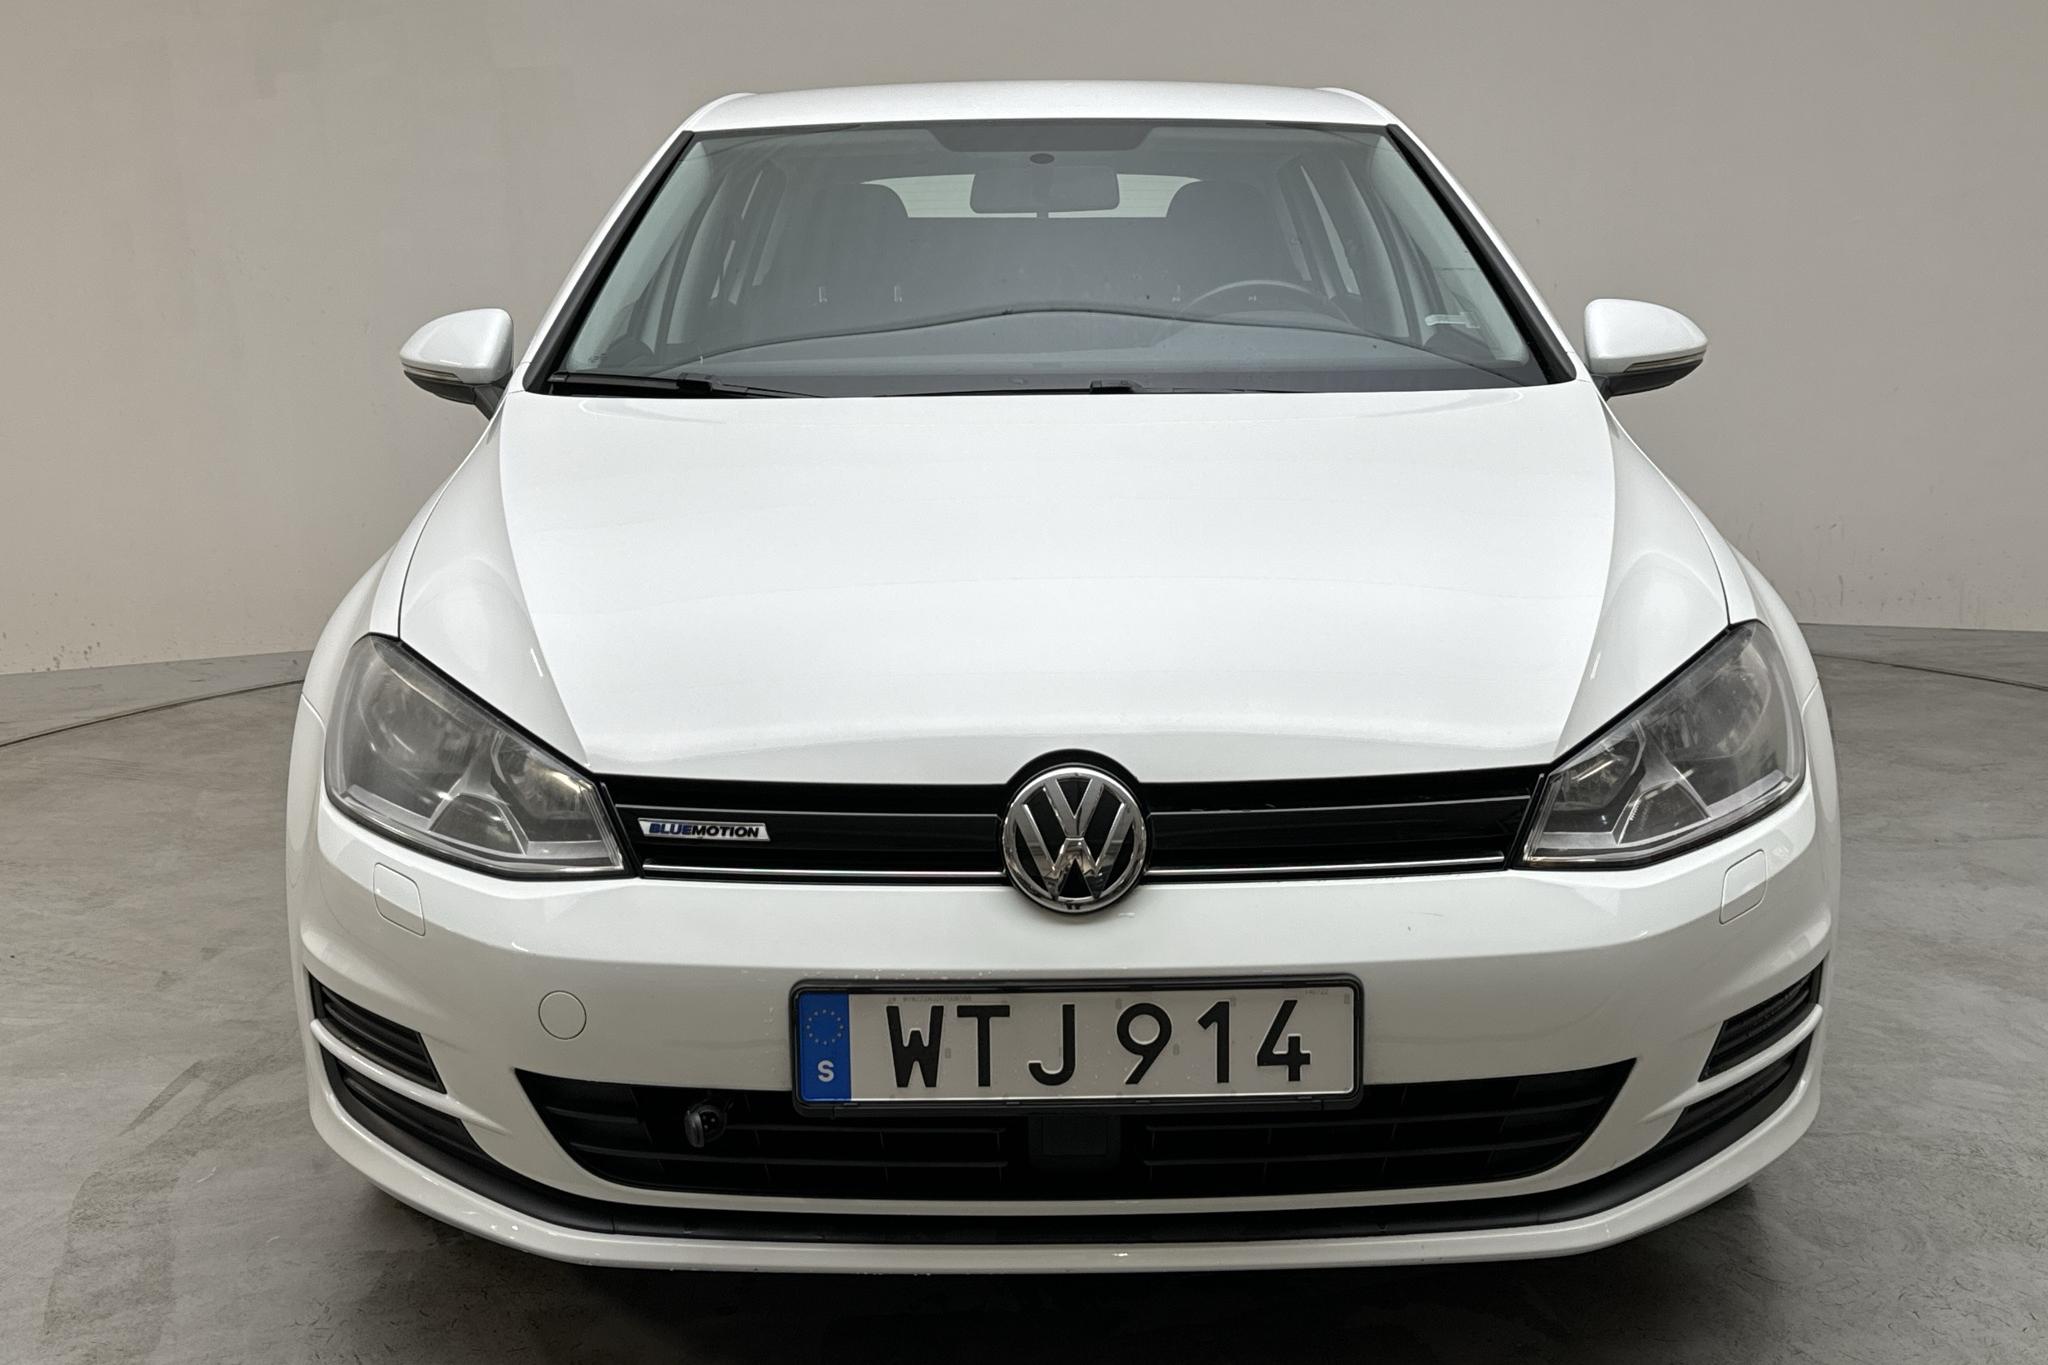 VW Golf VII 1.4 TGI 5dr (110hk) - 34 500 km - Manual - white - 2015